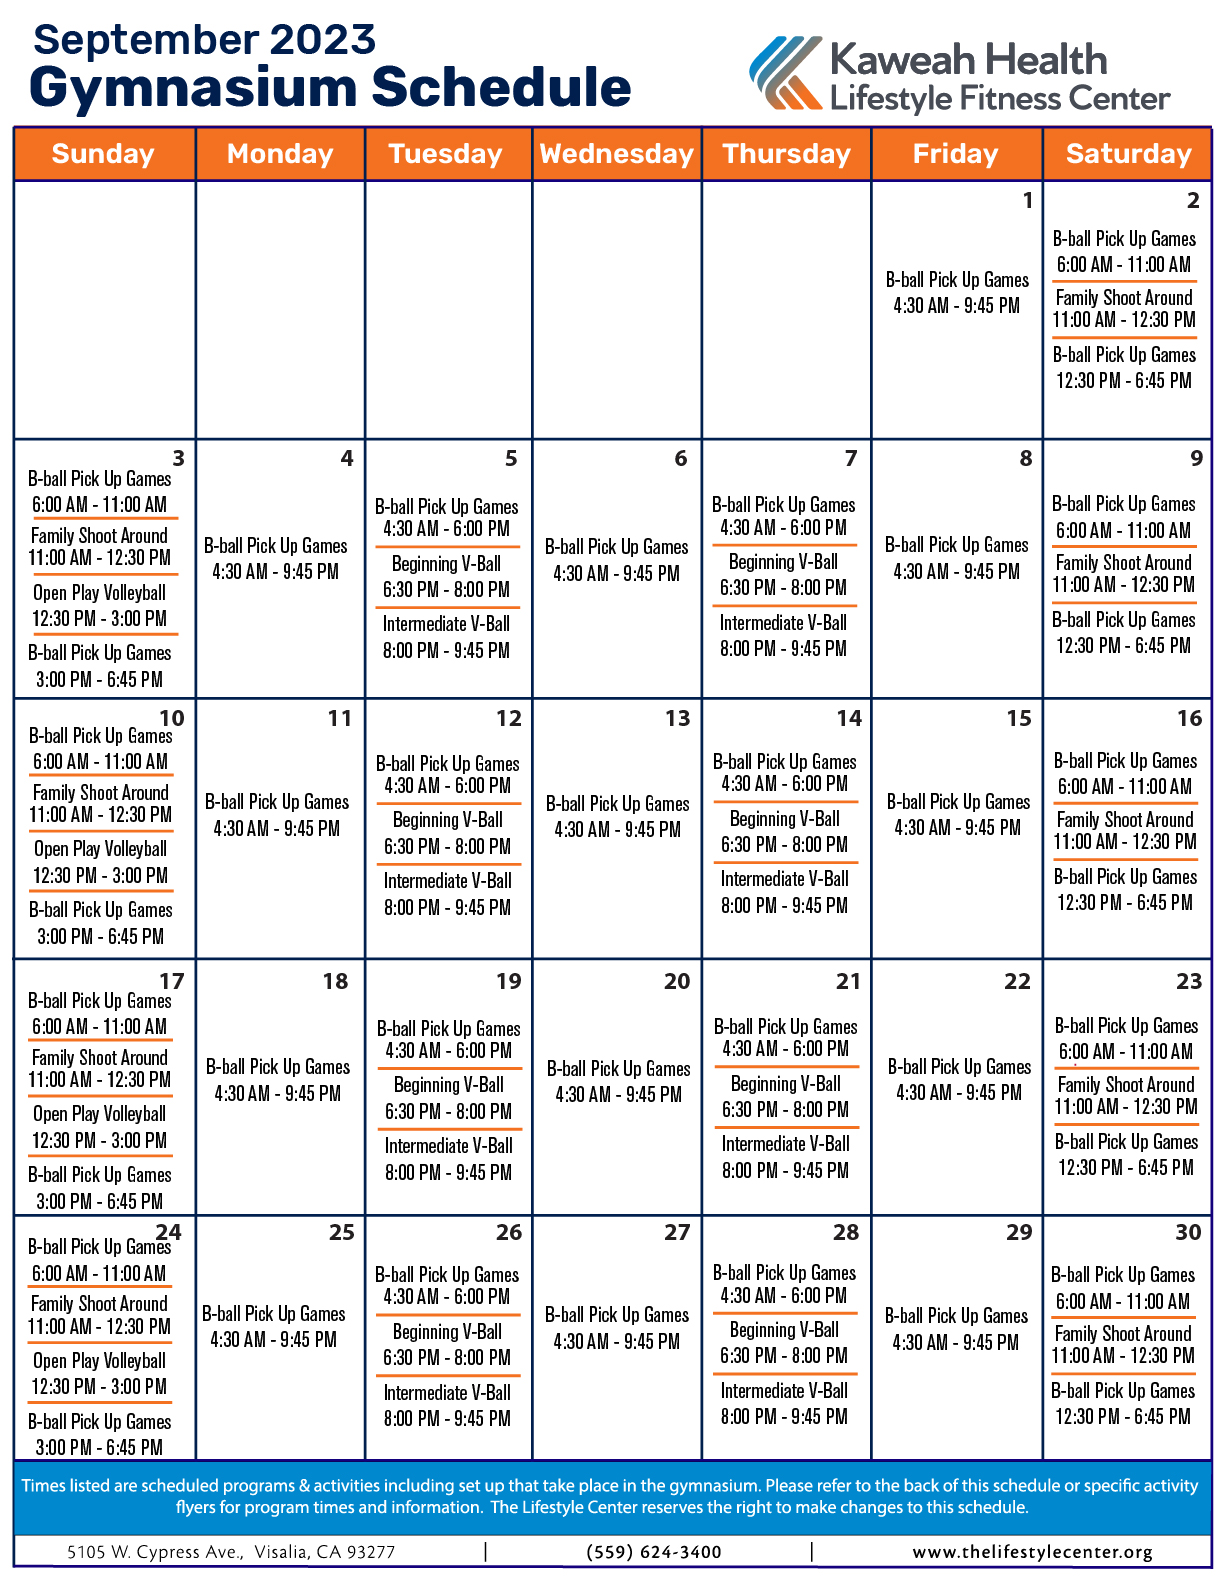 September 2023 Gymnasium schedule